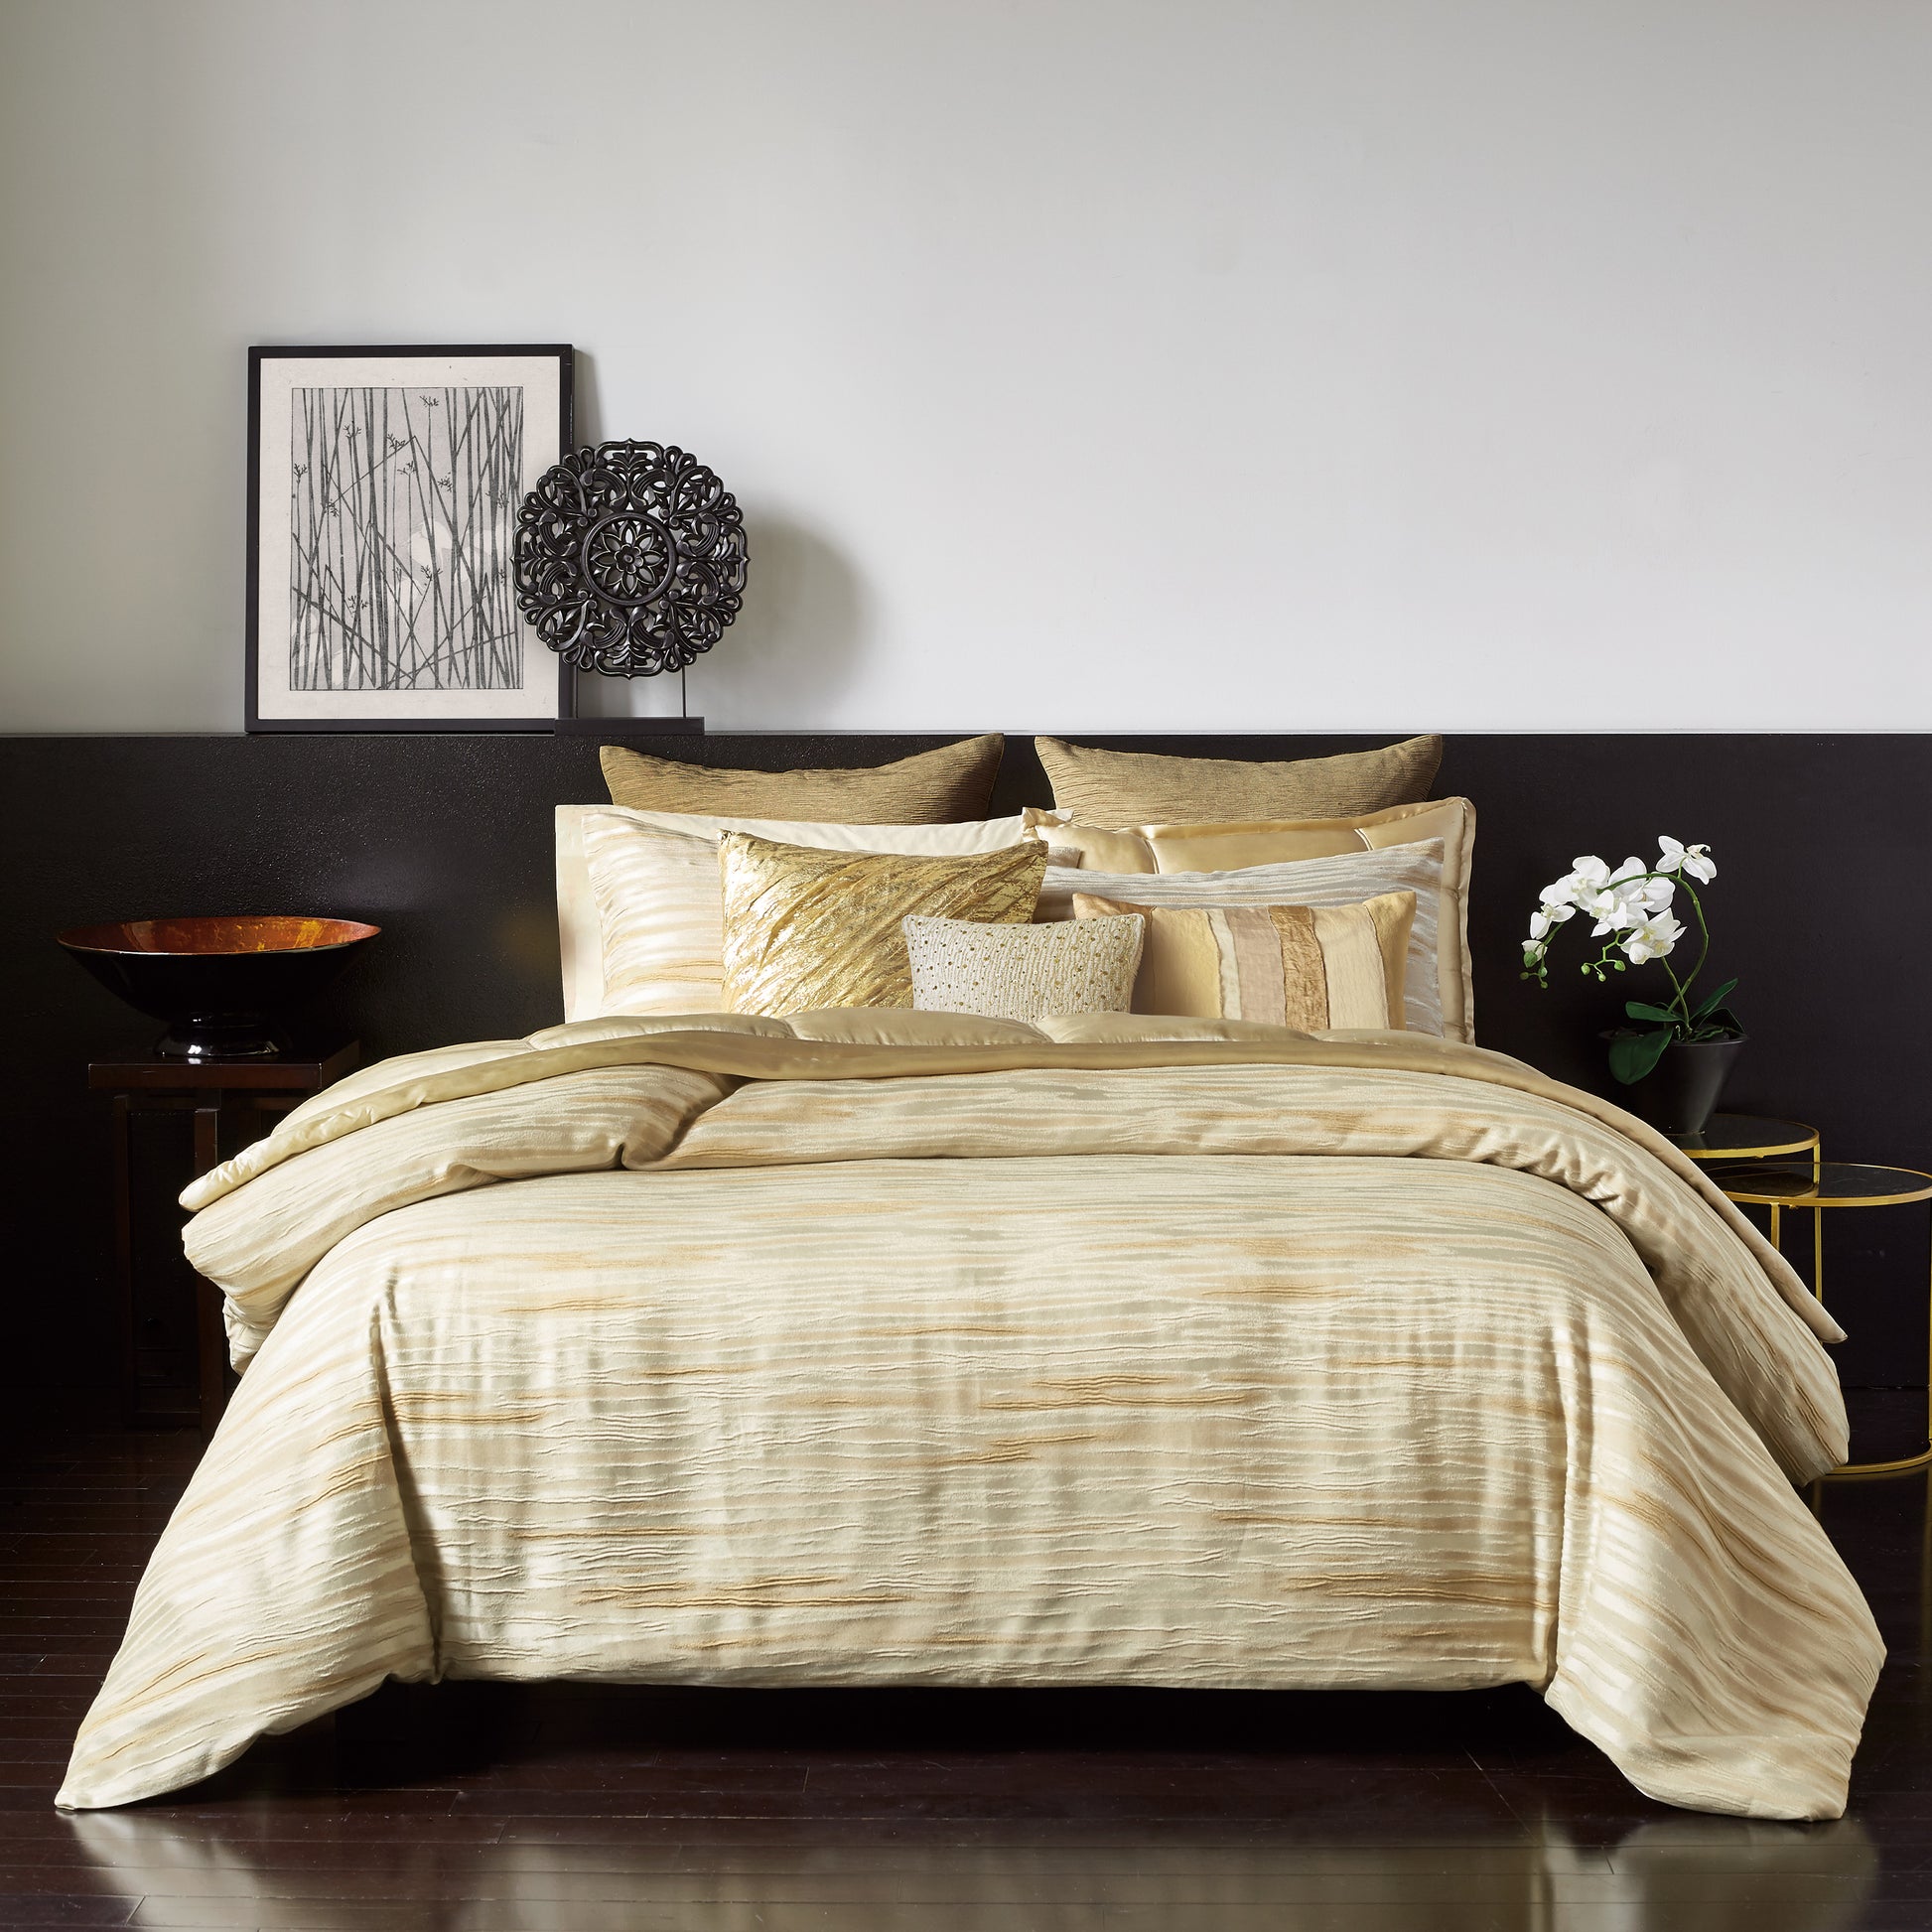 Donna Karan Gilded Collection Draped Decorative Pillow